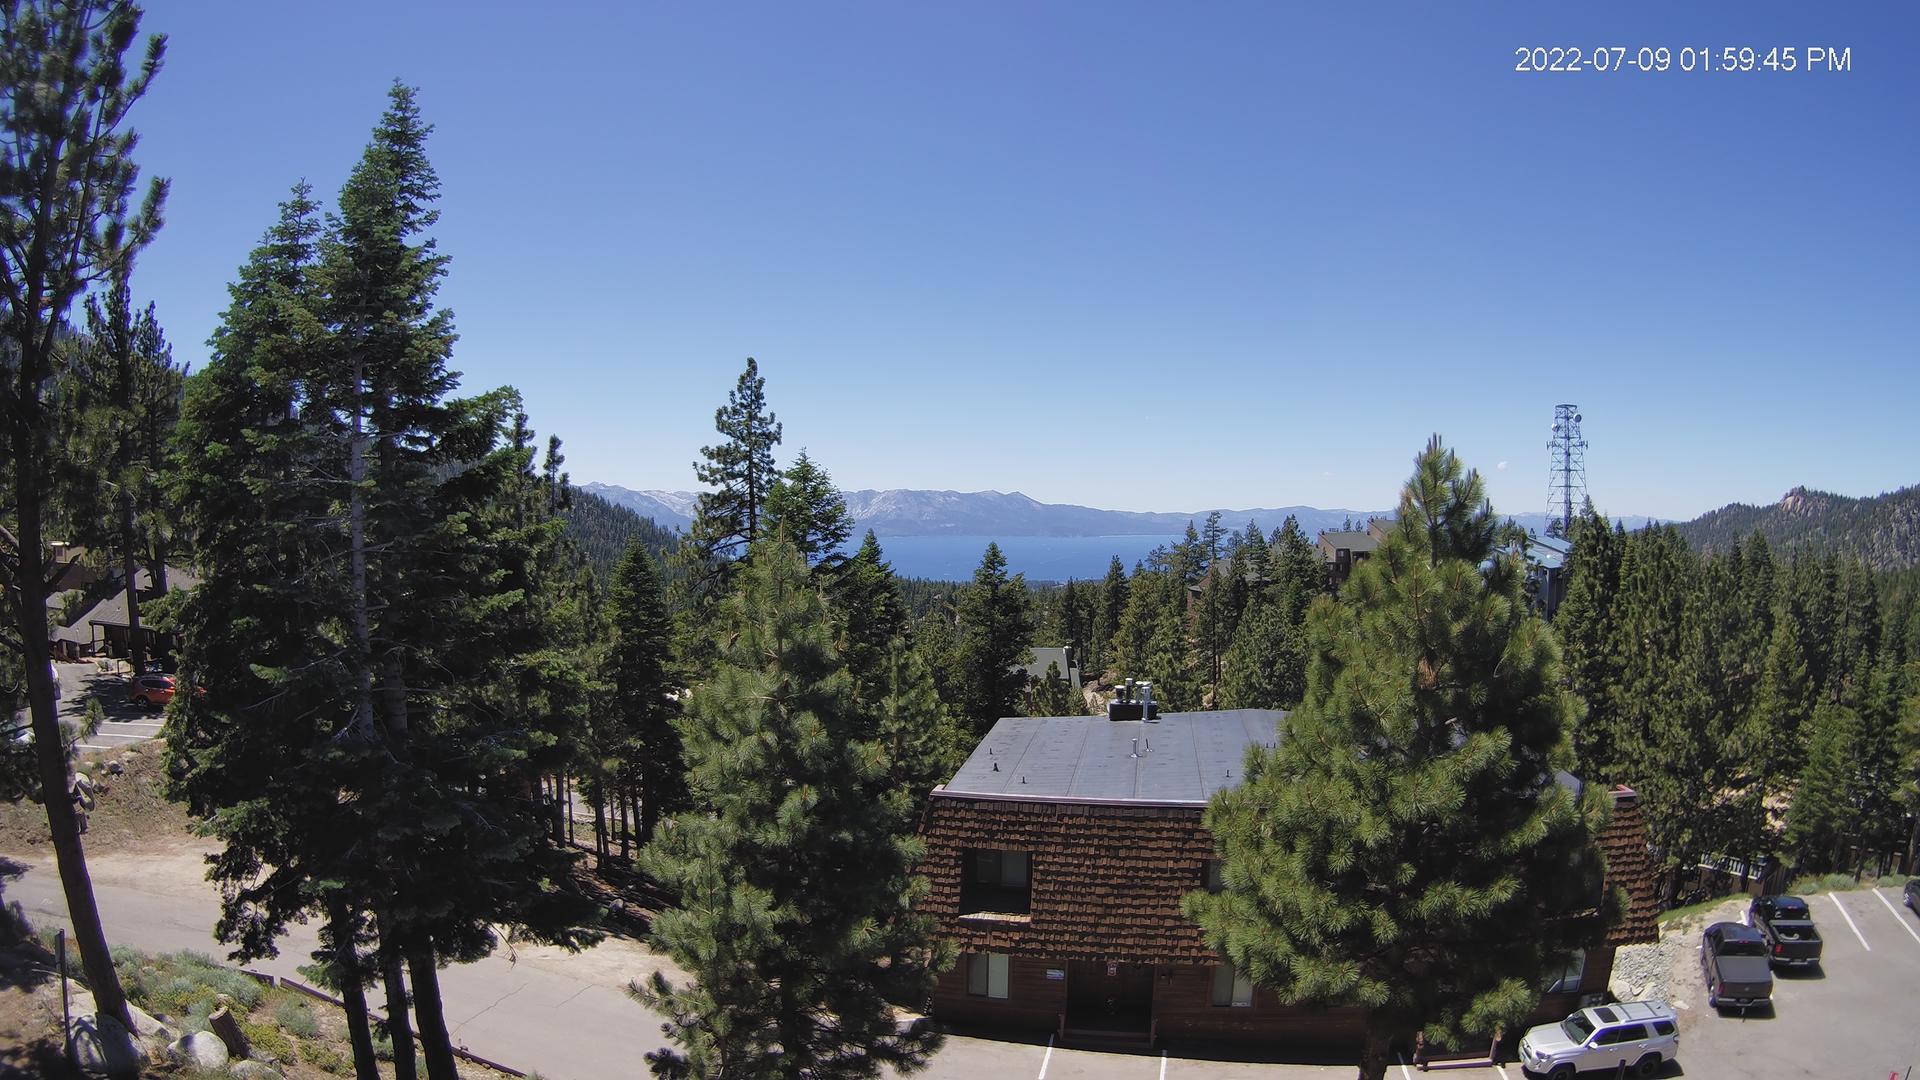 Minden › West: Lake Tahoe Traffic Camera